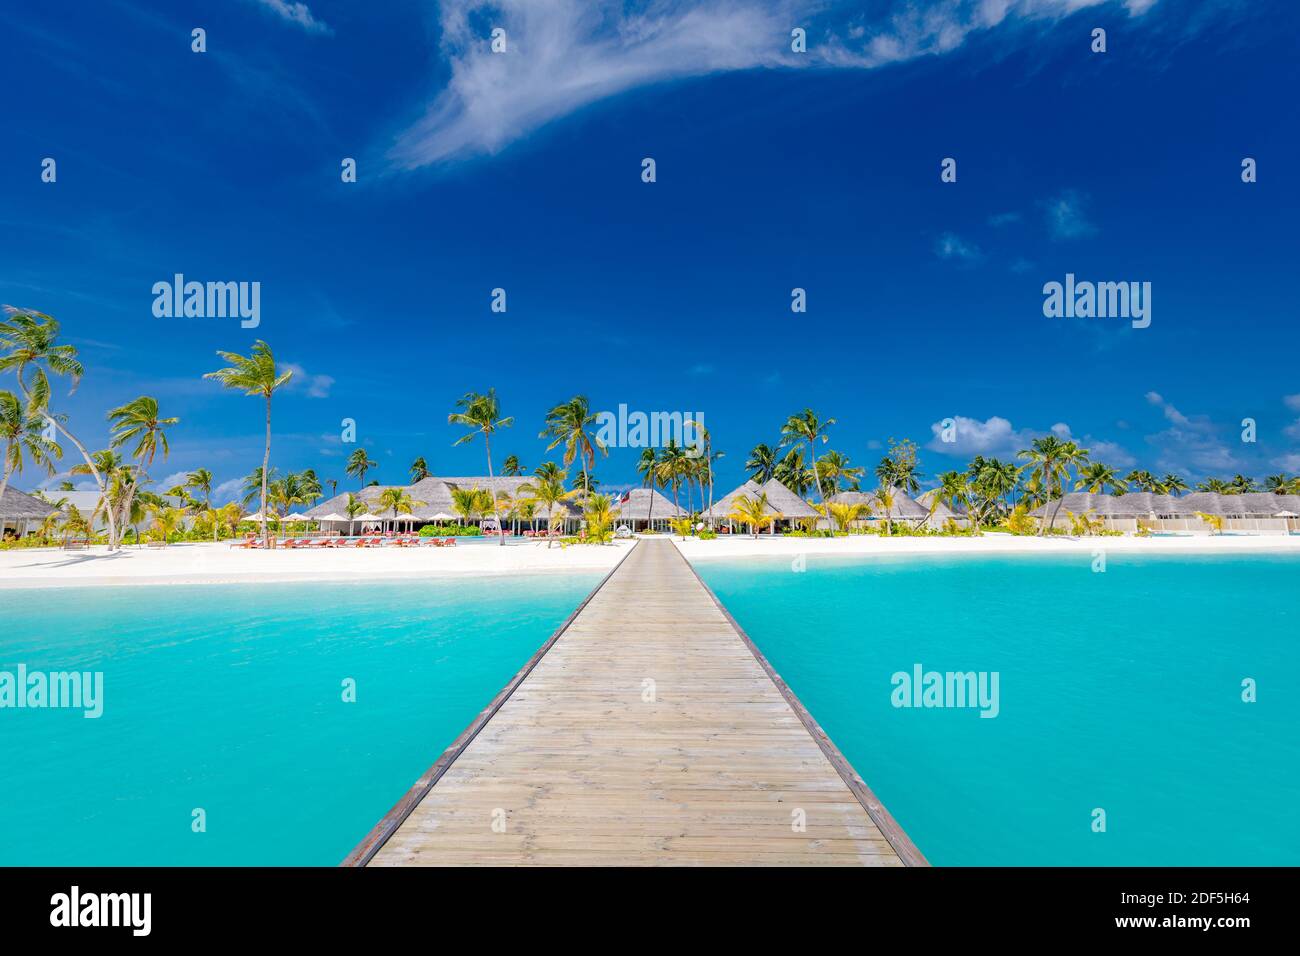 Malediven Paradies Landschaft. Tropische Landschaft, Seeseite mit langen Steg, Wasservillen mit wunderschönem Meer Lagune Strand, tropische Natur Sommerurlaub Stockfoto